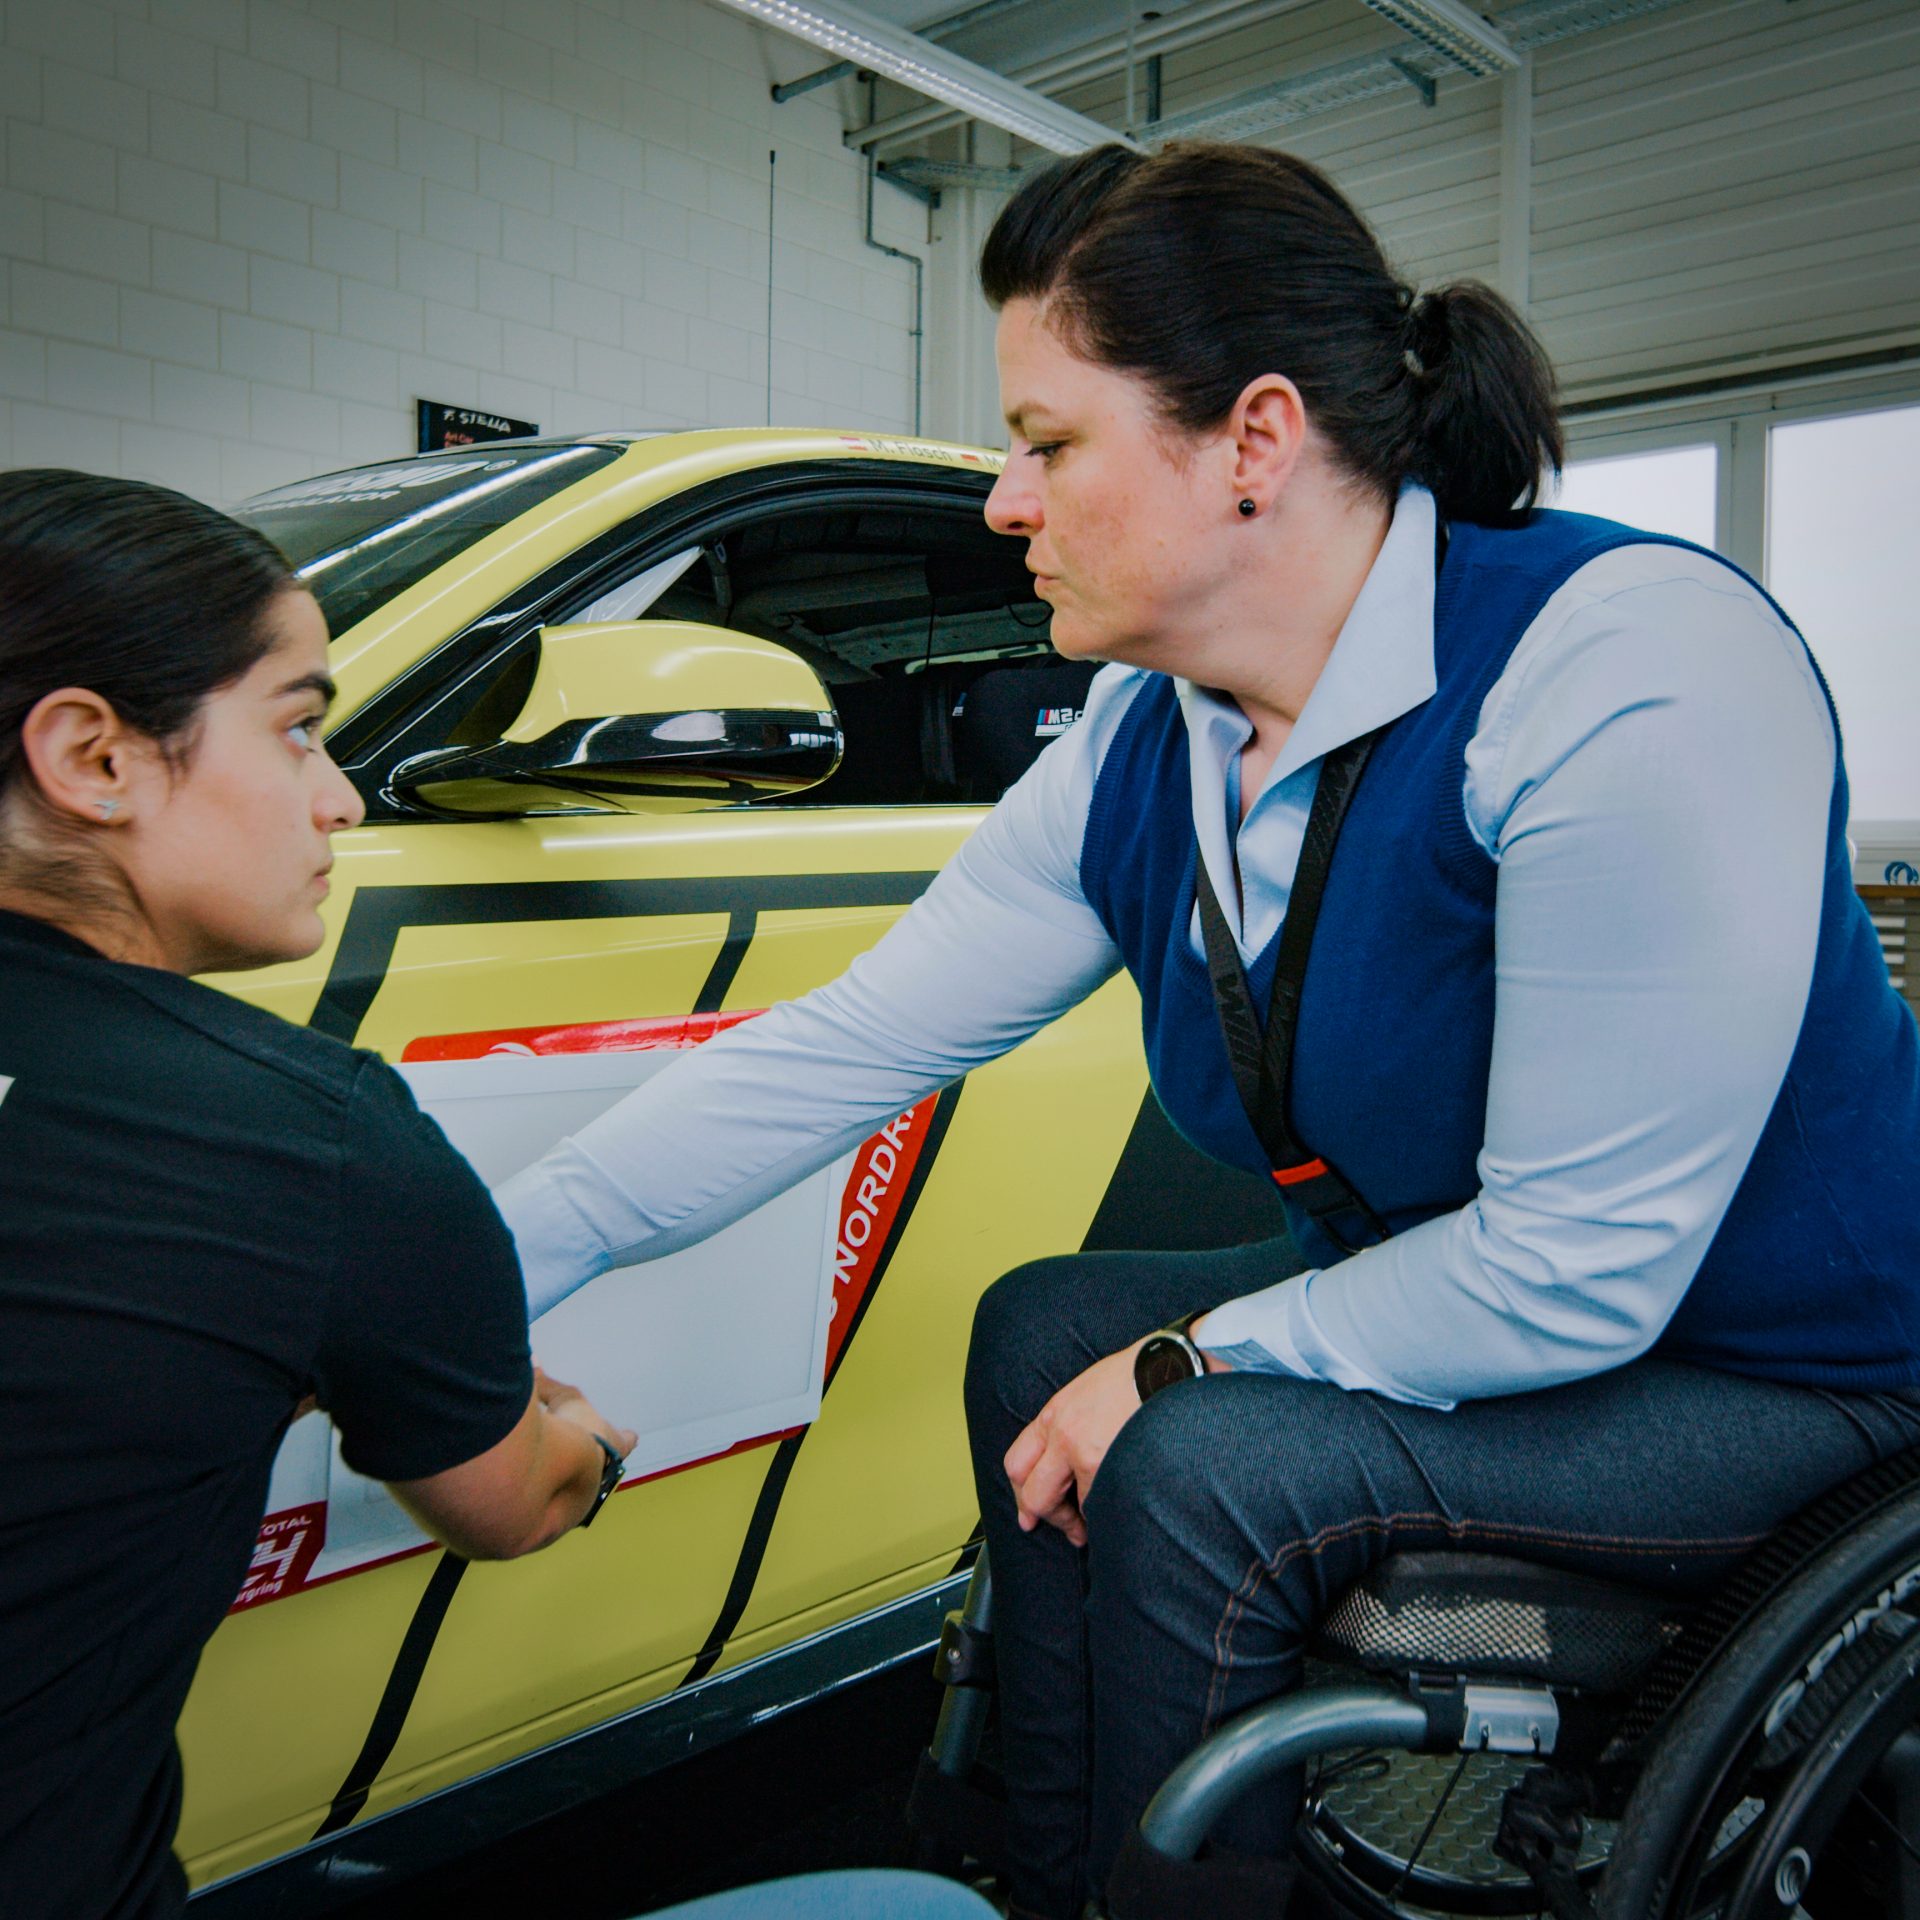 Eine Frau im Rollstuhl im Gespräch mit einer Kollegin an einem Fahrzeug.